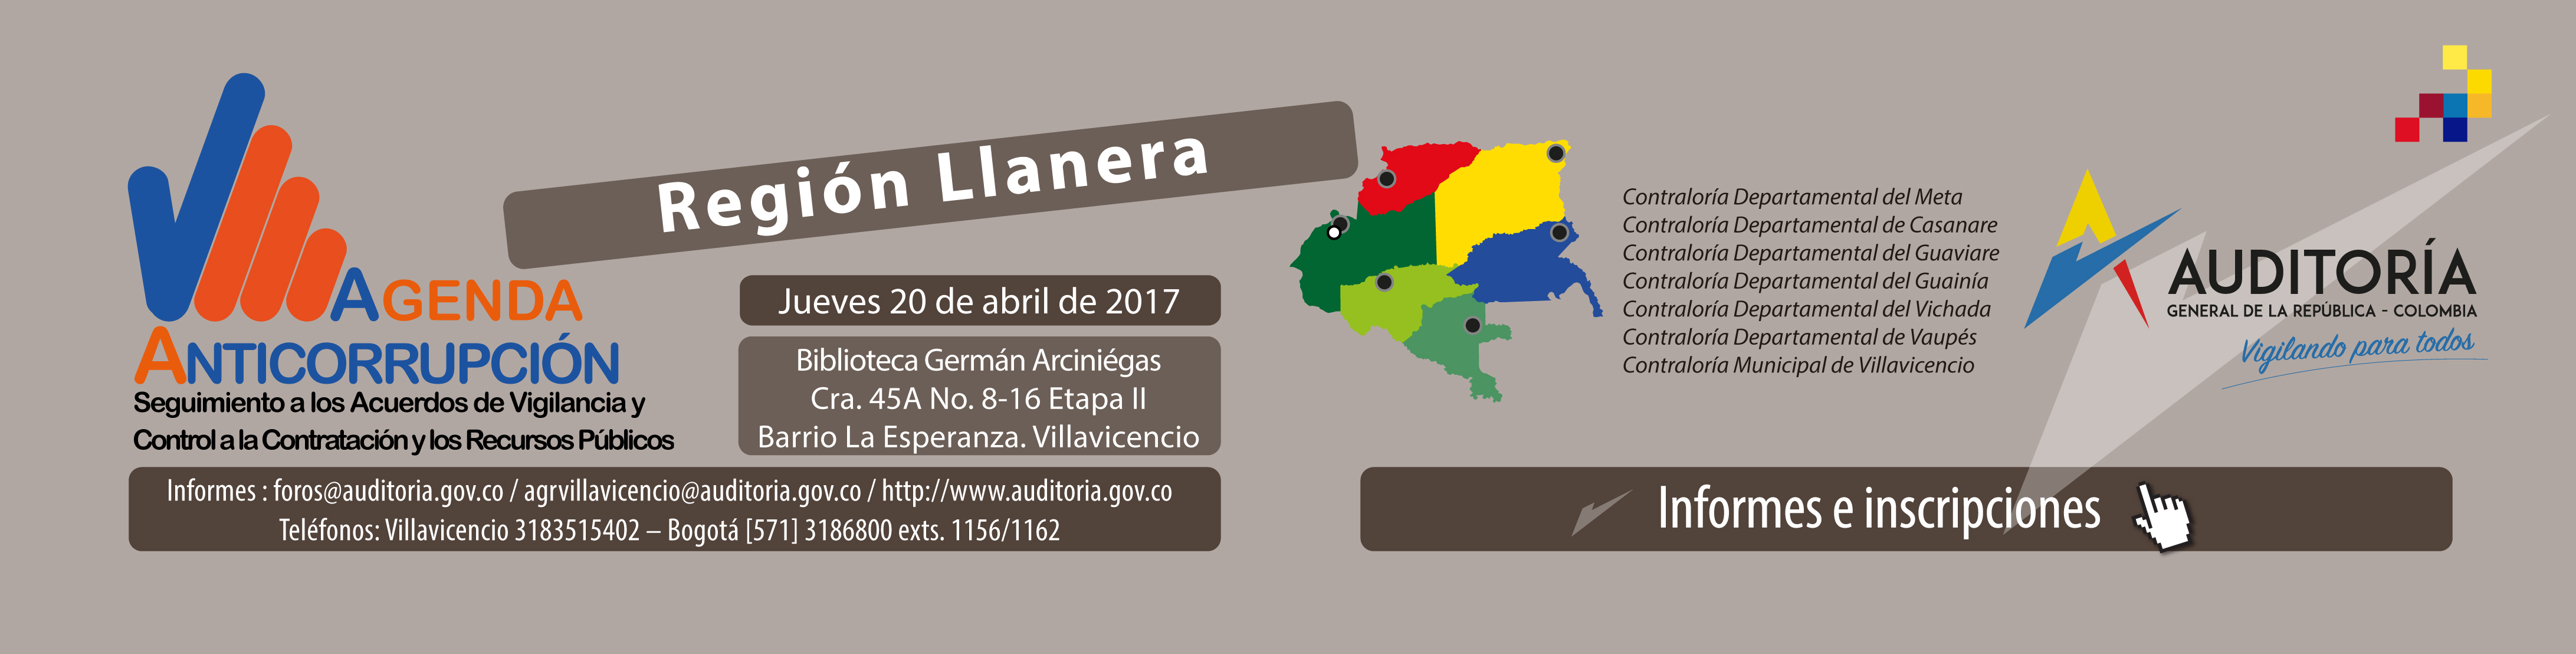  En Villavicencio: Agenda Anticorrupción de organismos de control fiscal de la región Llanera